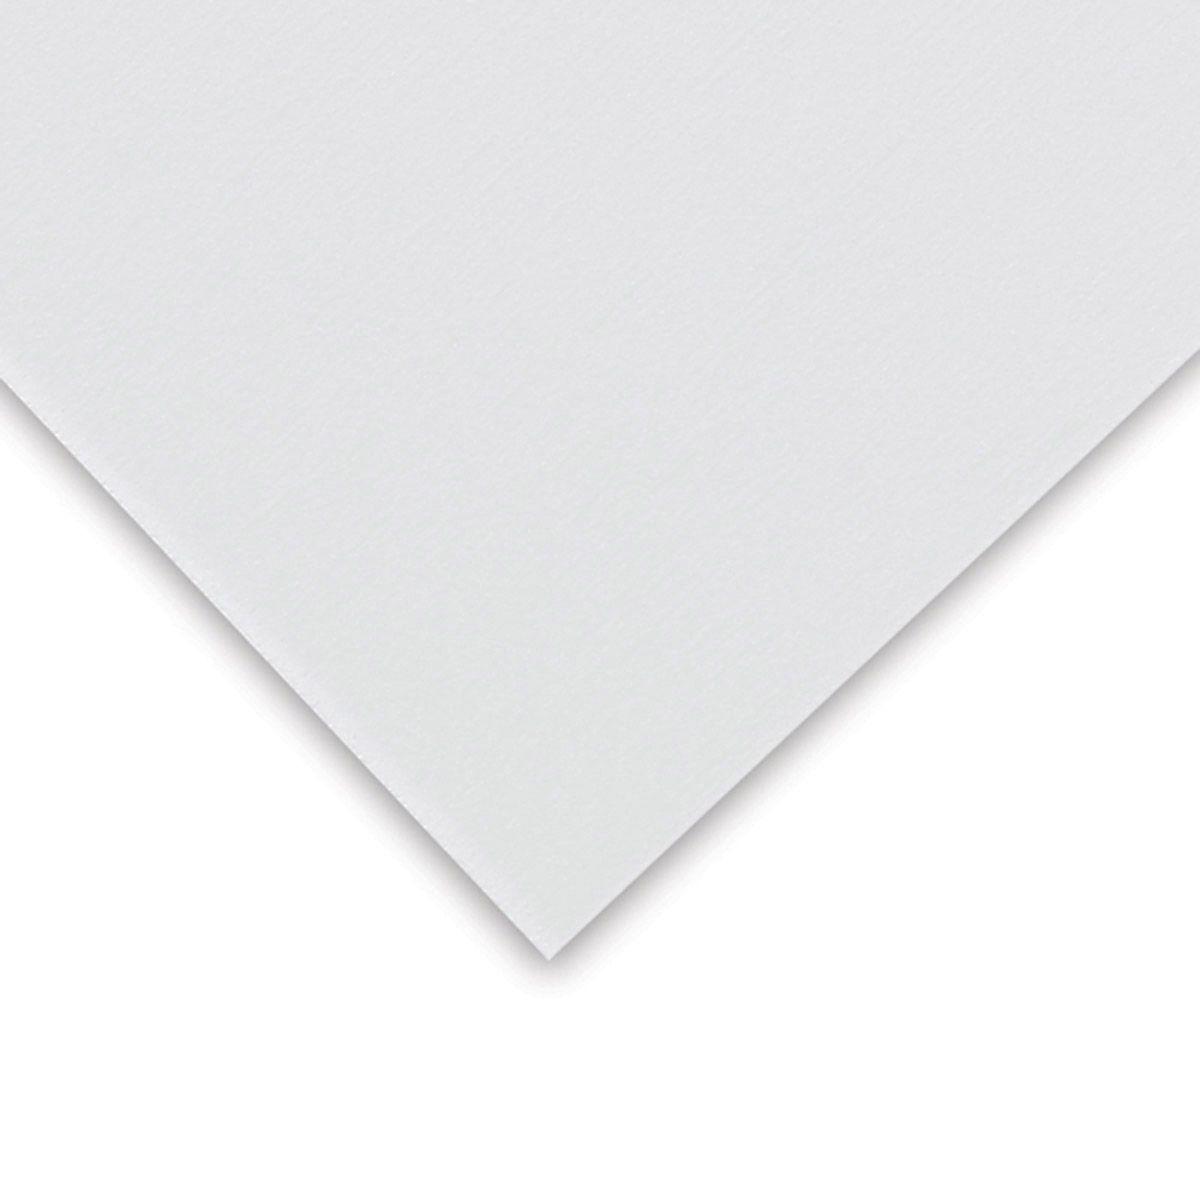 Pastel Premier Sanded Paper Med Grit, White Sheet, 20